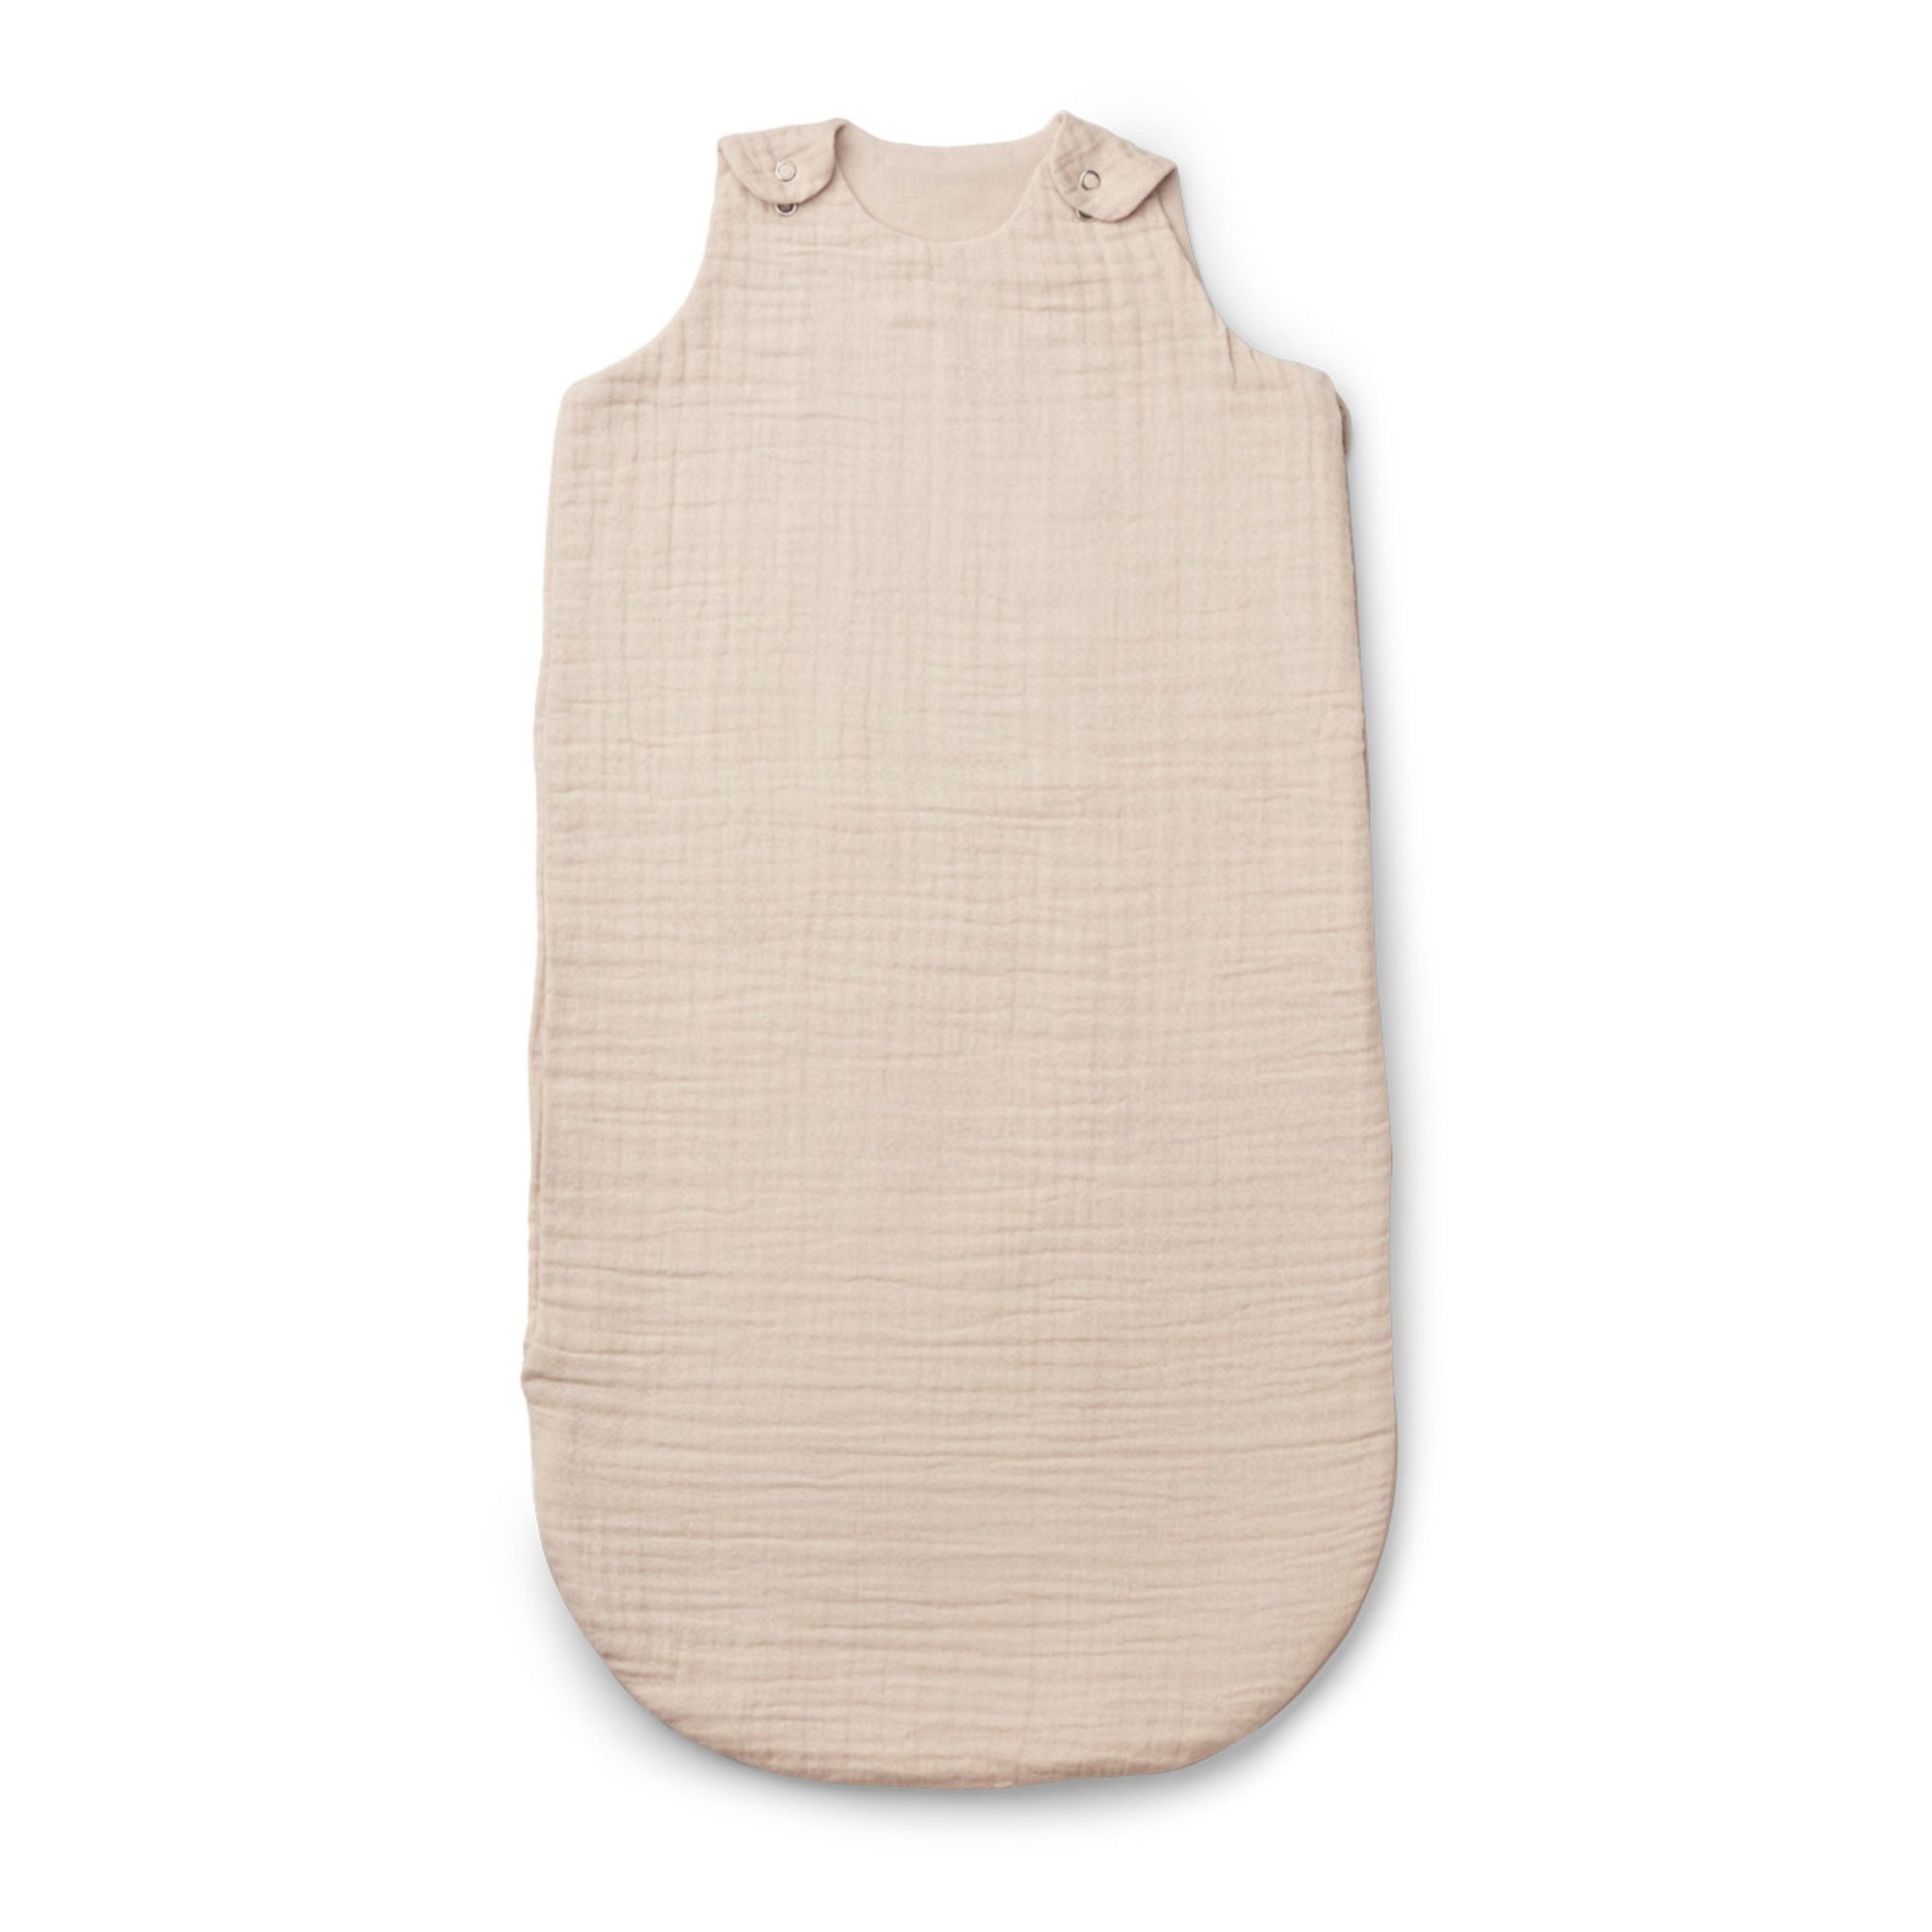 Liewood Flora Organic Cotton Lightweight Sleeping Bag Beige 6/12 months unisex